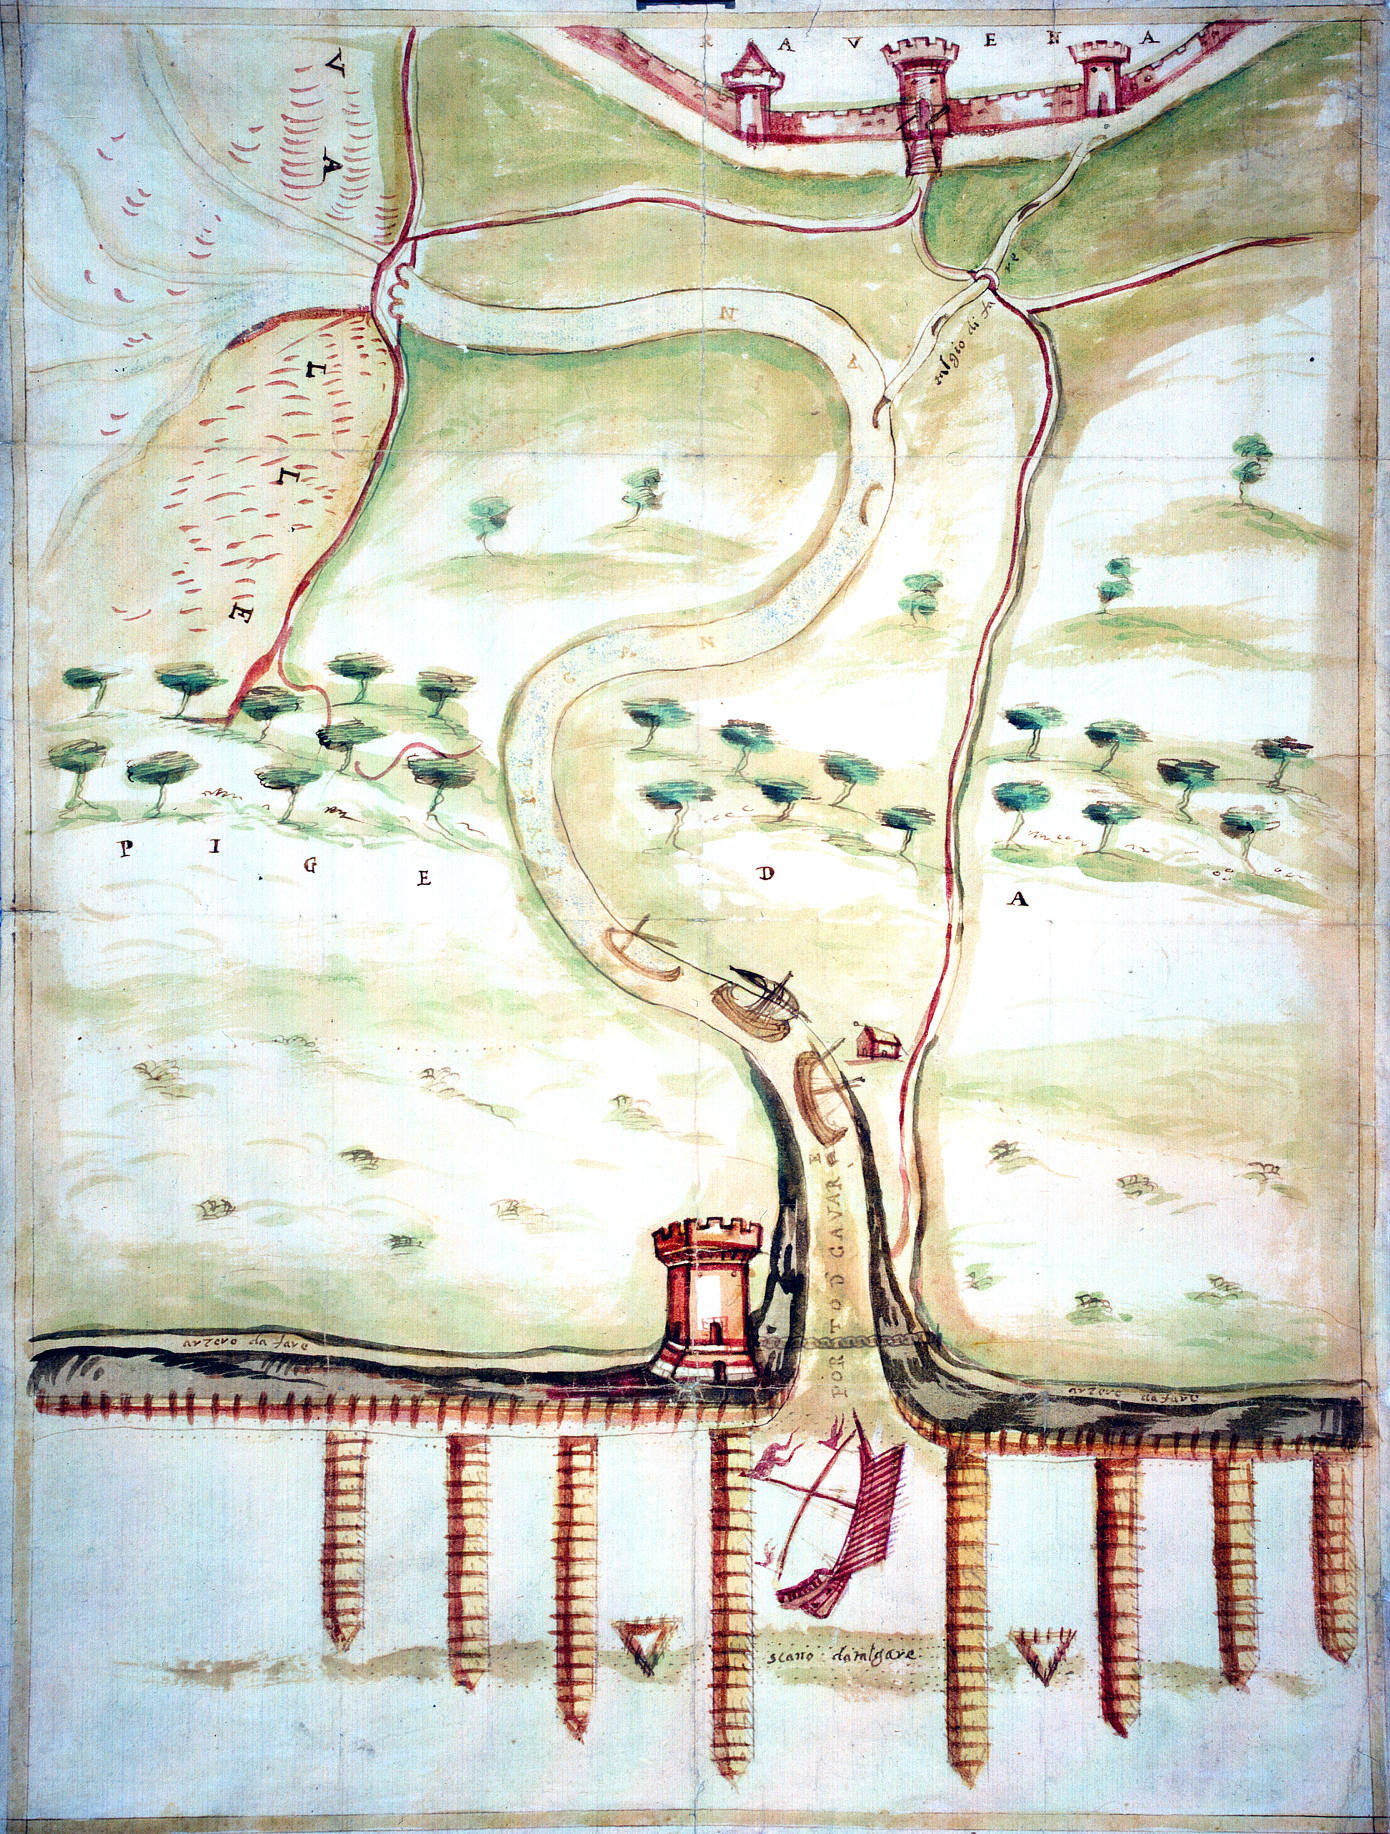 Porto Candiano e suo circondario con torre sulla destra
autore: ignoto
data: XVI secolo